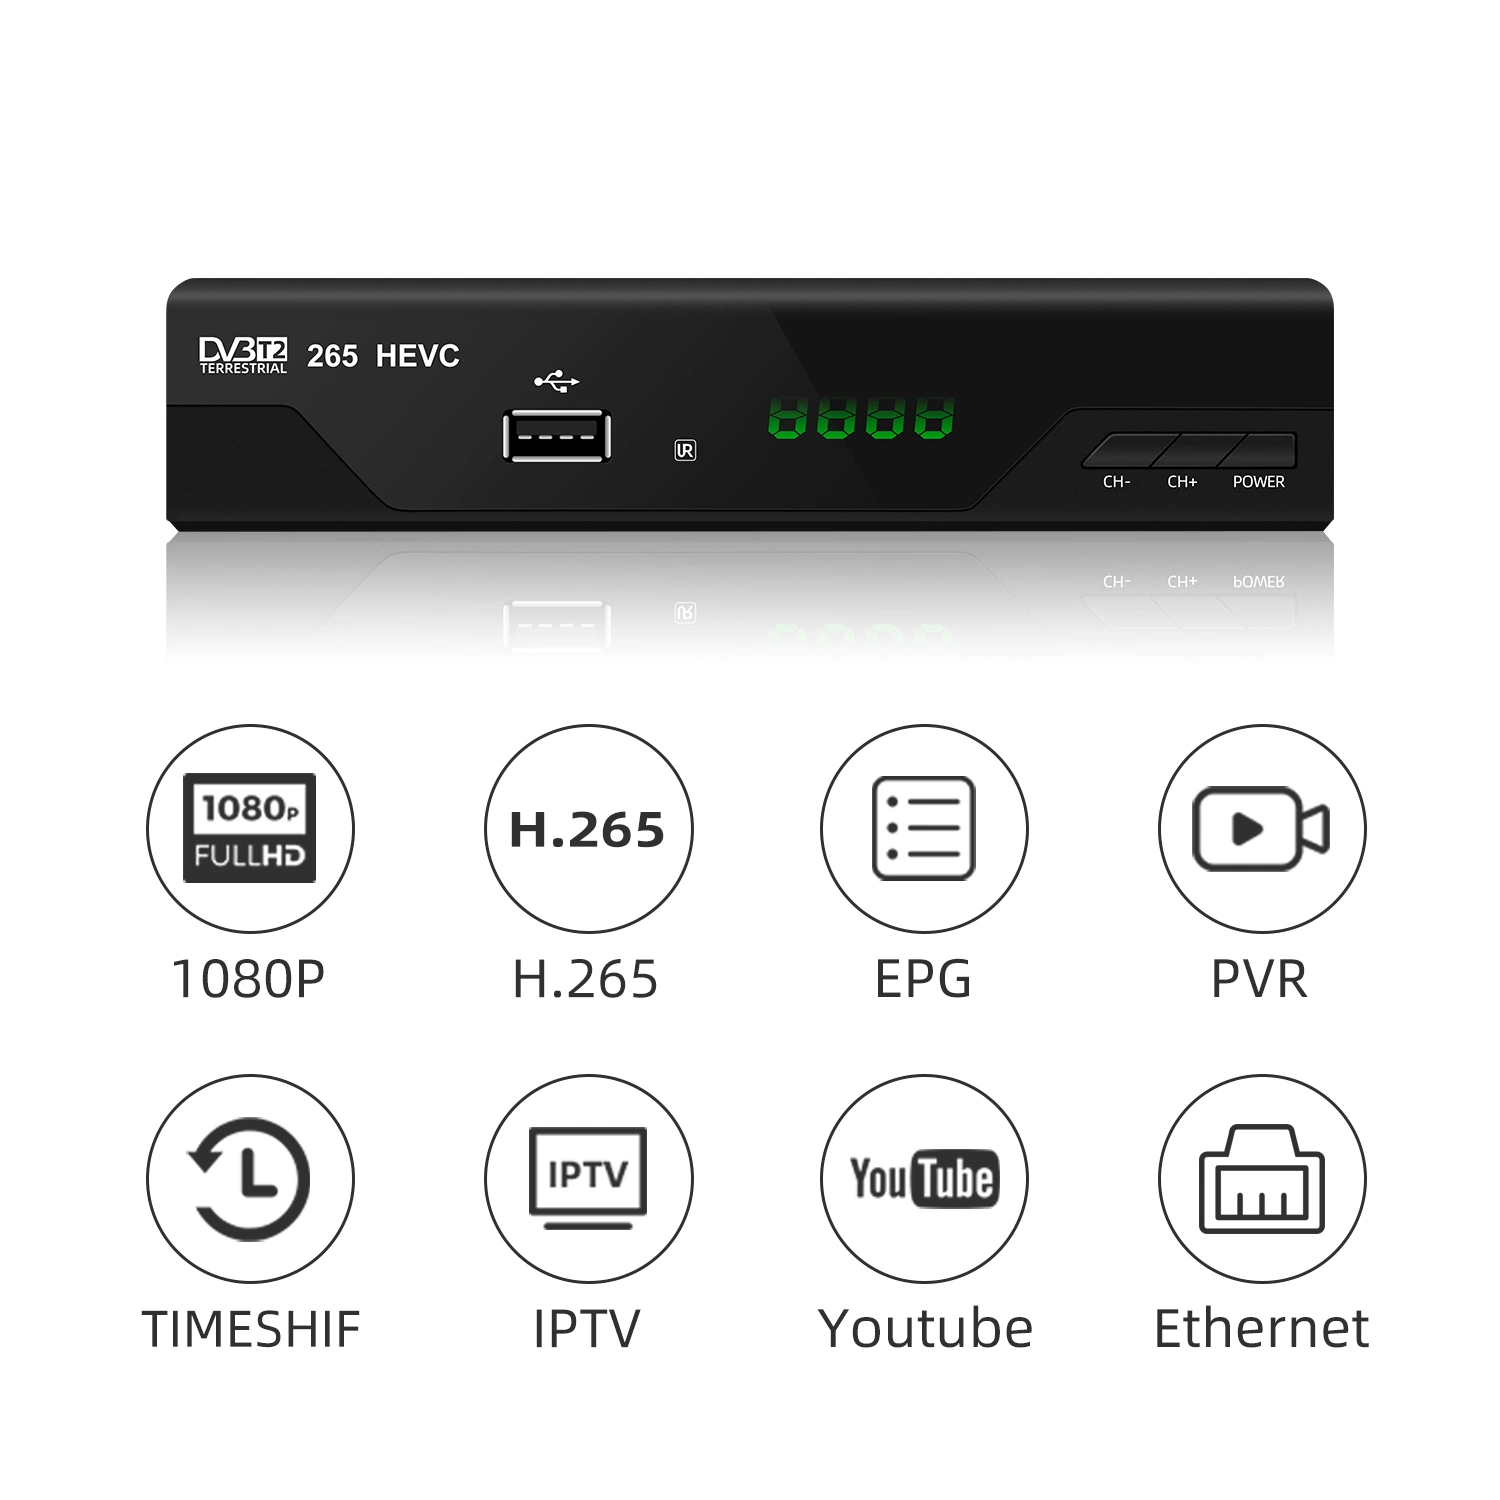 Tschechische DVB-T2 TV Receiver Full HD 1080p Unterstützung HEVC H. 265 Decoder